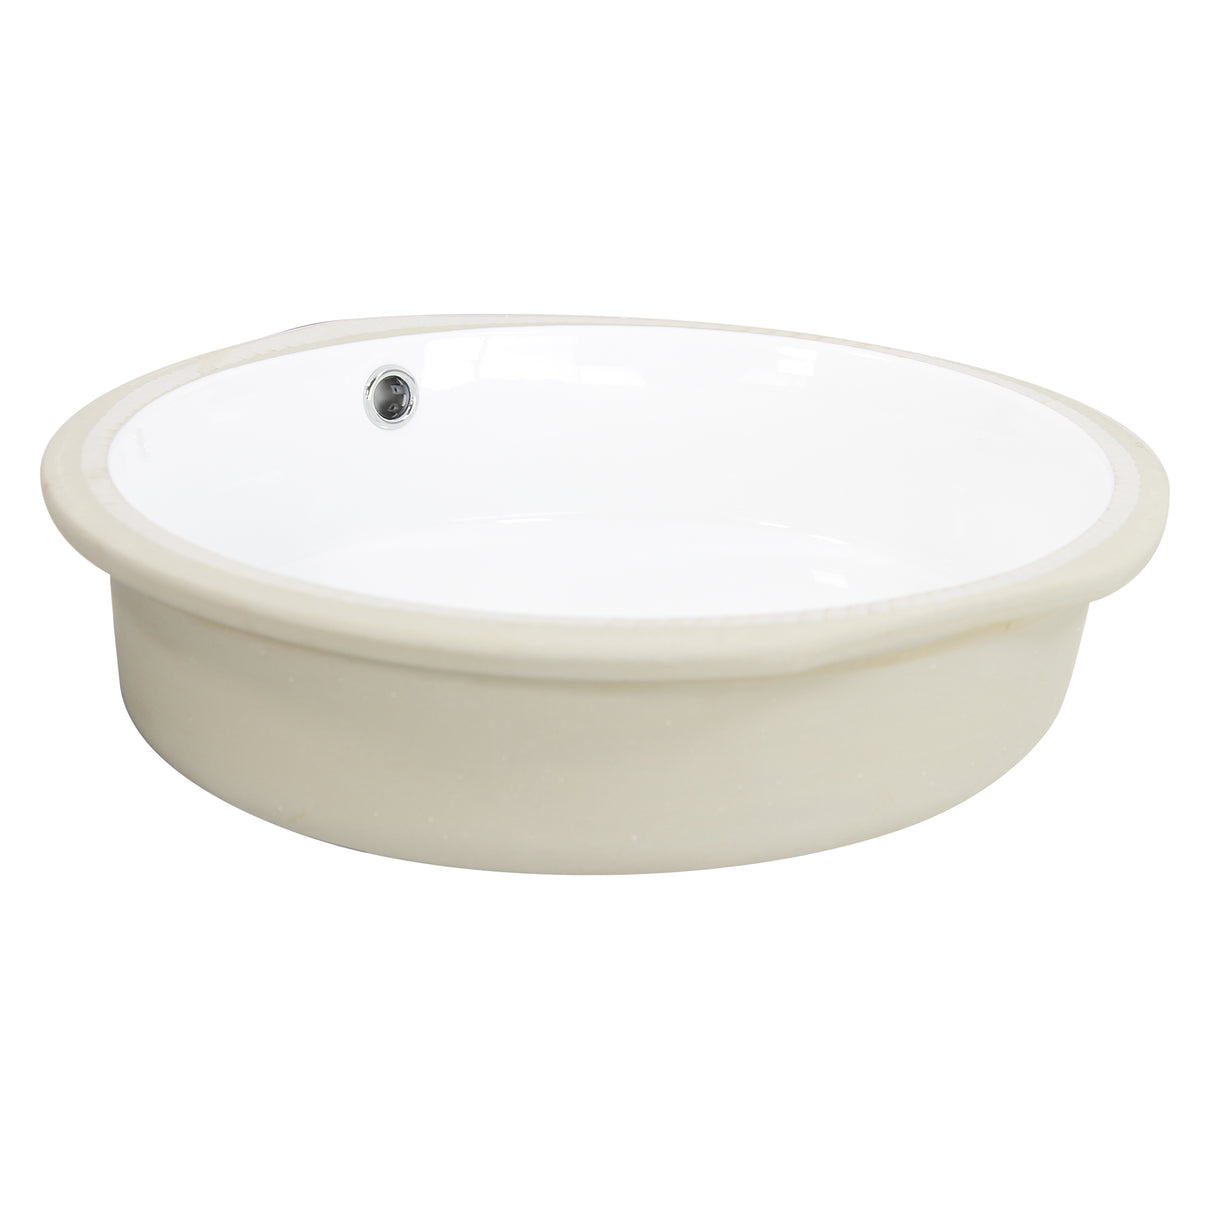 Nantucket Sinks Oval Undermount Ceramic Sink In White UM-16CW